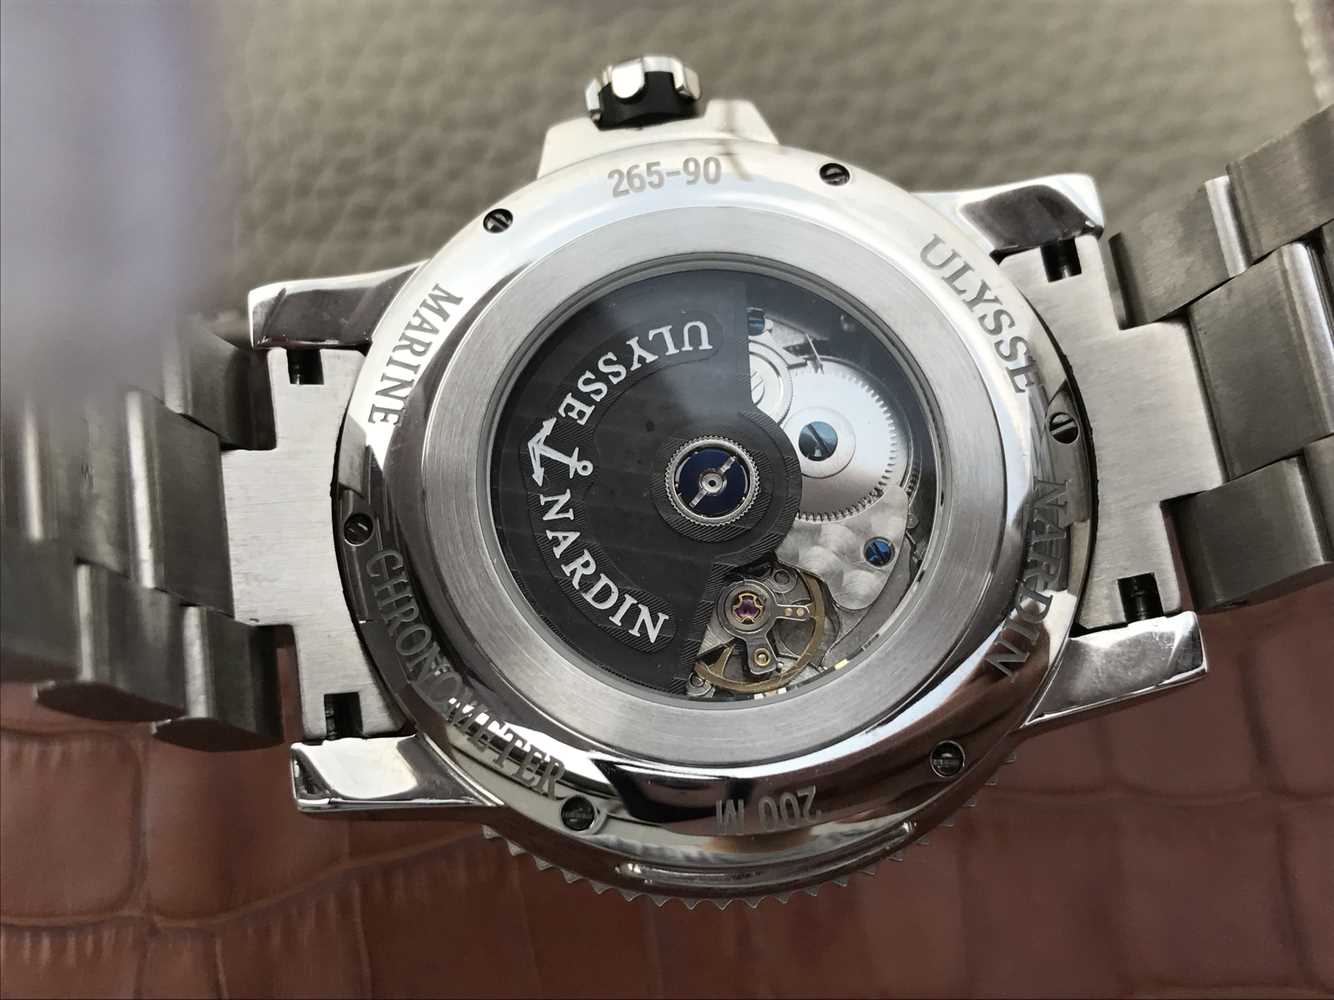 2023020415464933 - 高仿雅典手表价格 N厂精仿雅典潜水系列263-90航海男士腕表手表￥3790